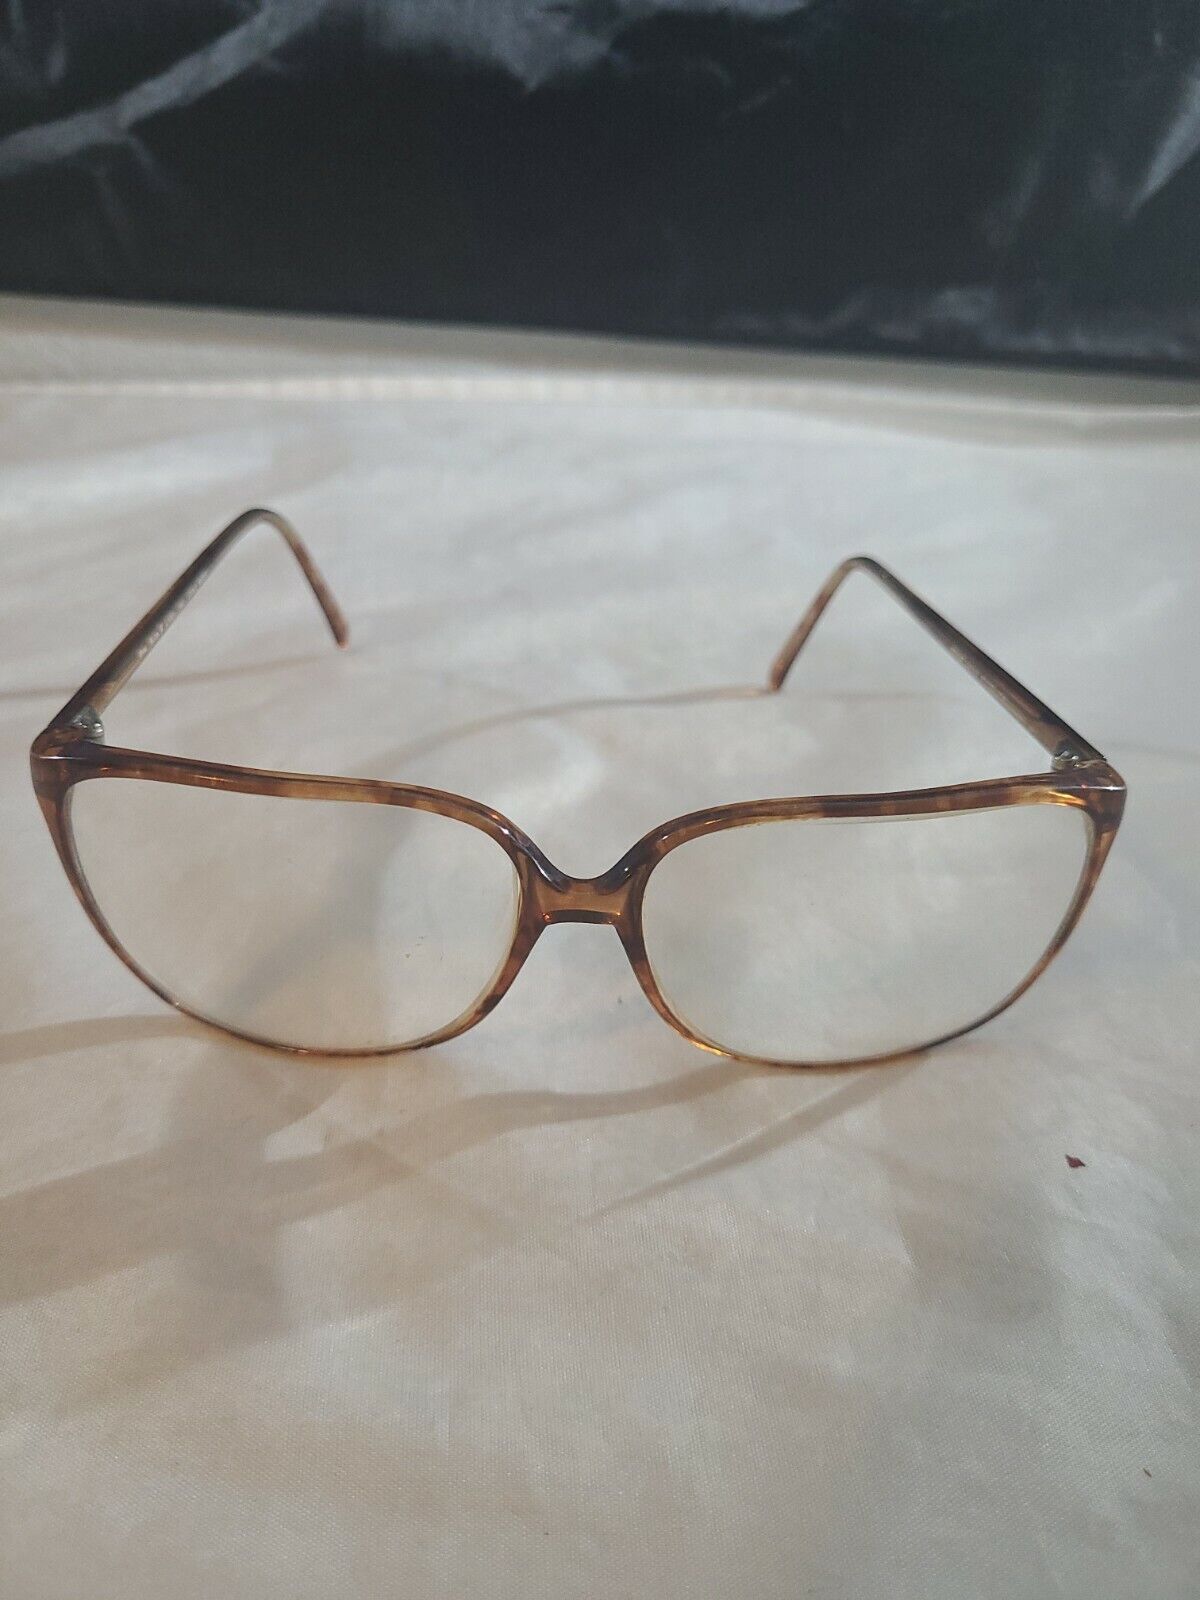 ANNE KLEIN II VINTAGE Eyeglasses Frame L1031 Japan 140 Cold Insert 60 15 104